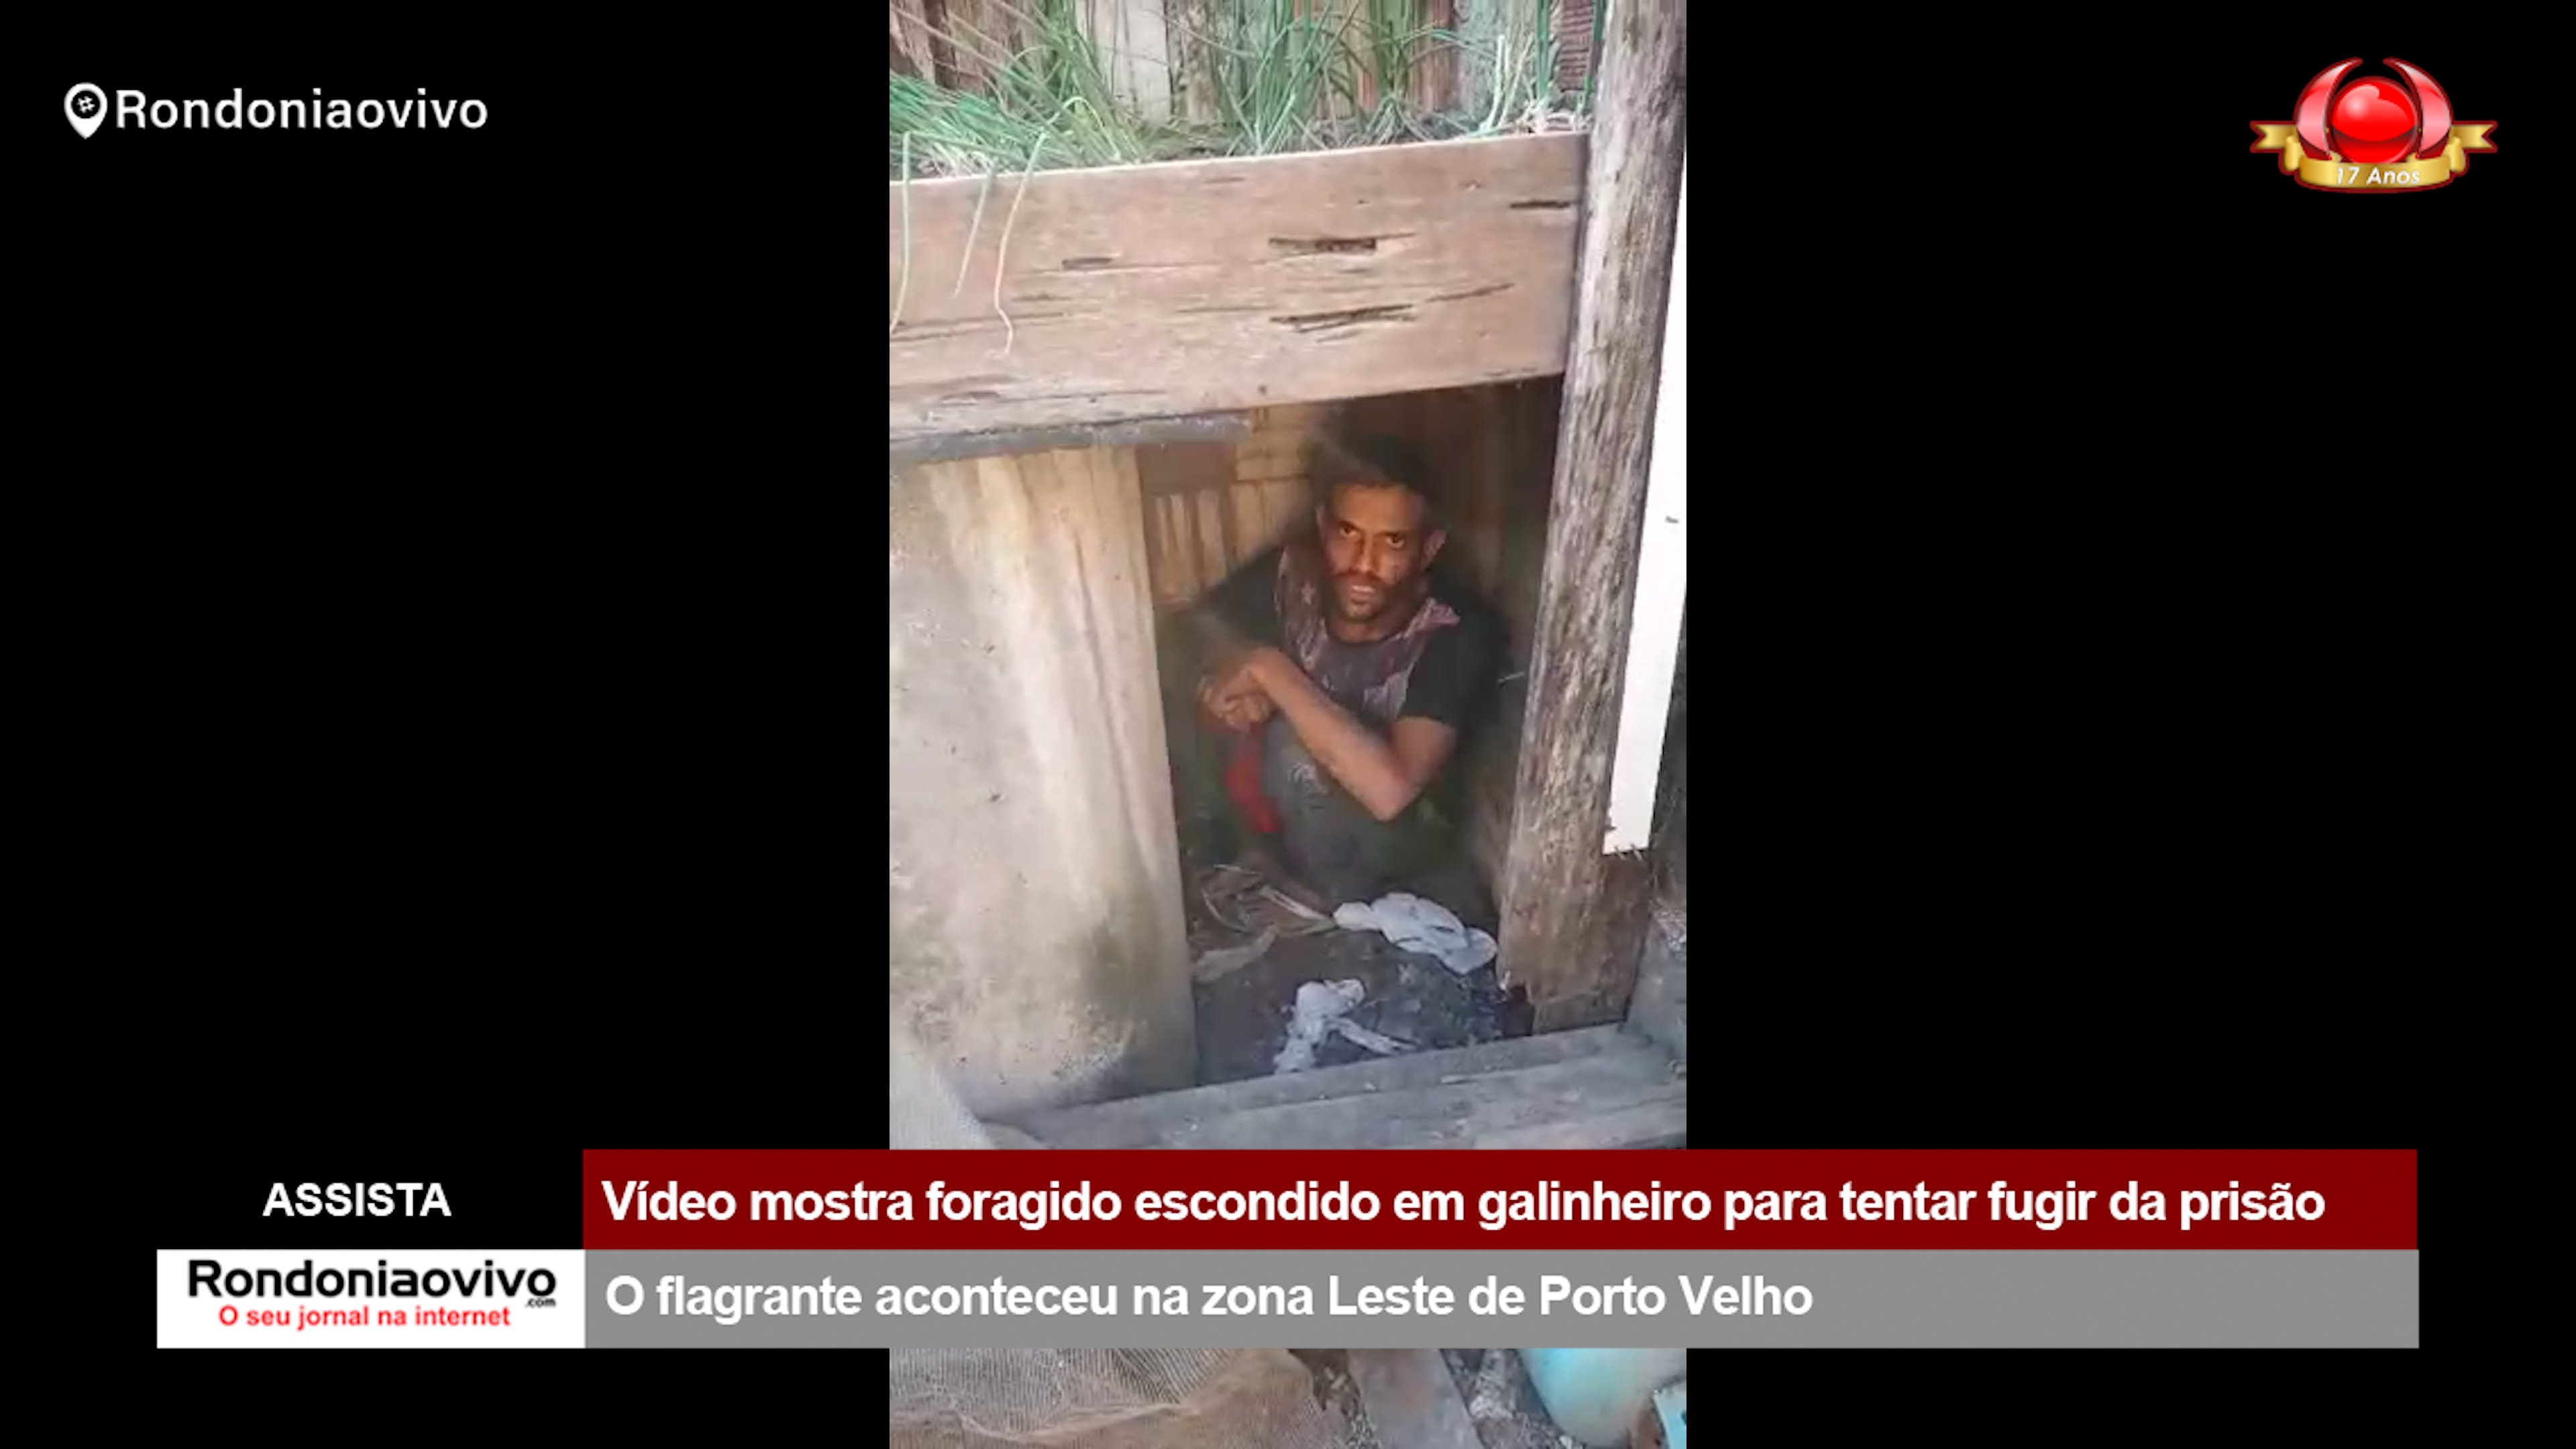 ASSISTA: Vídeo mostra foragido escondido em galinheiro para tentar fugir da prisão